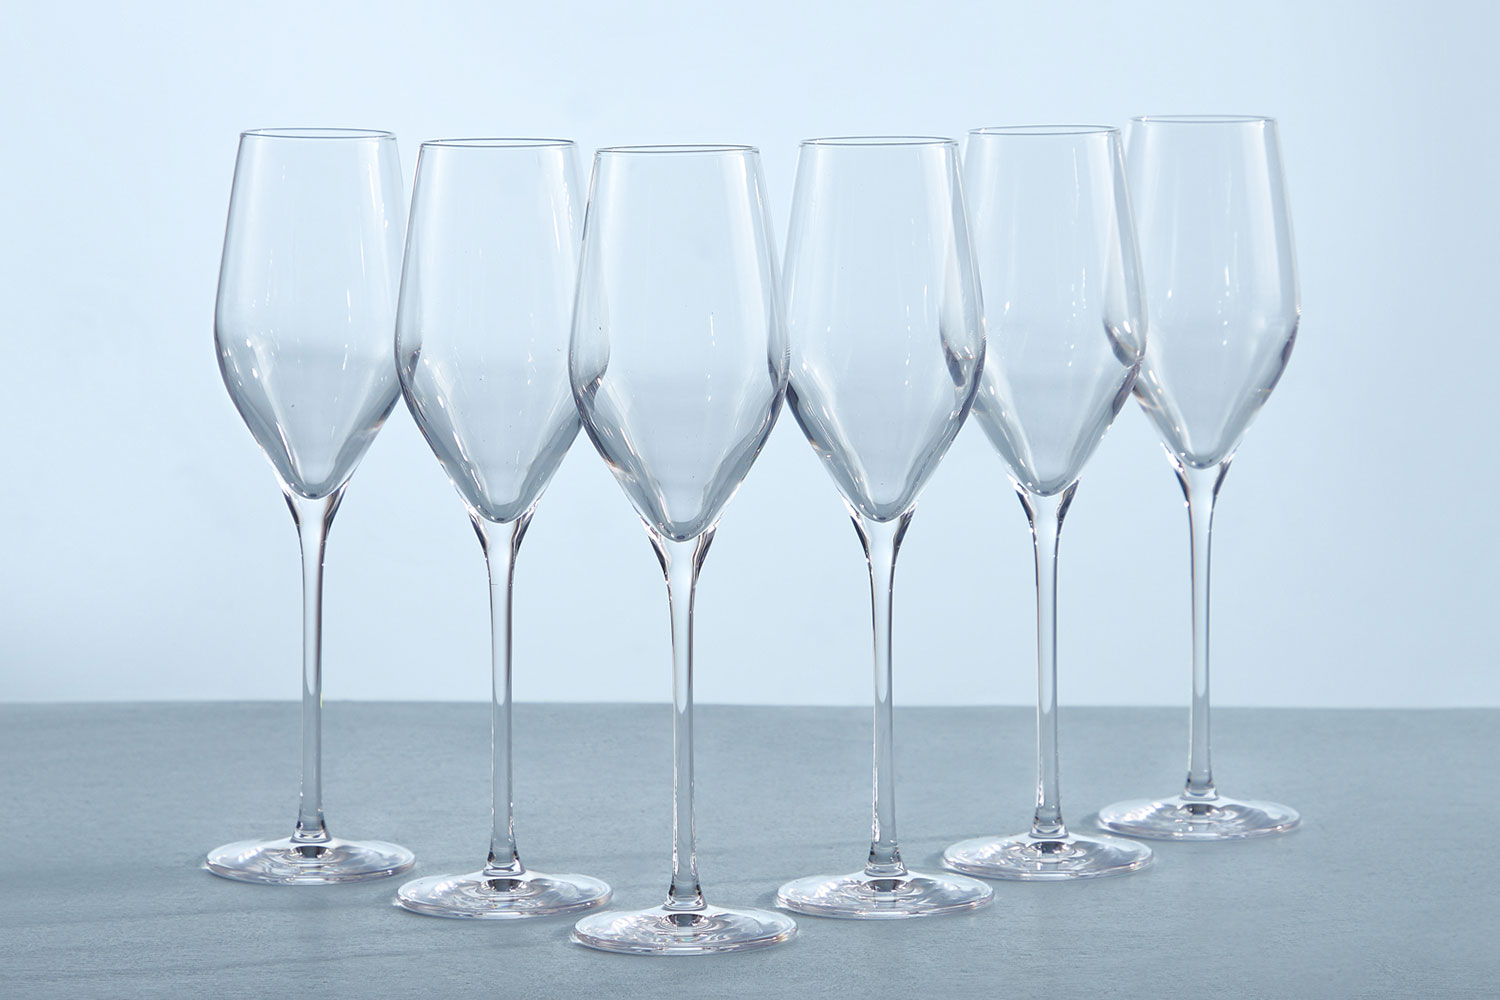 Набор бокалов для шампанского Avila